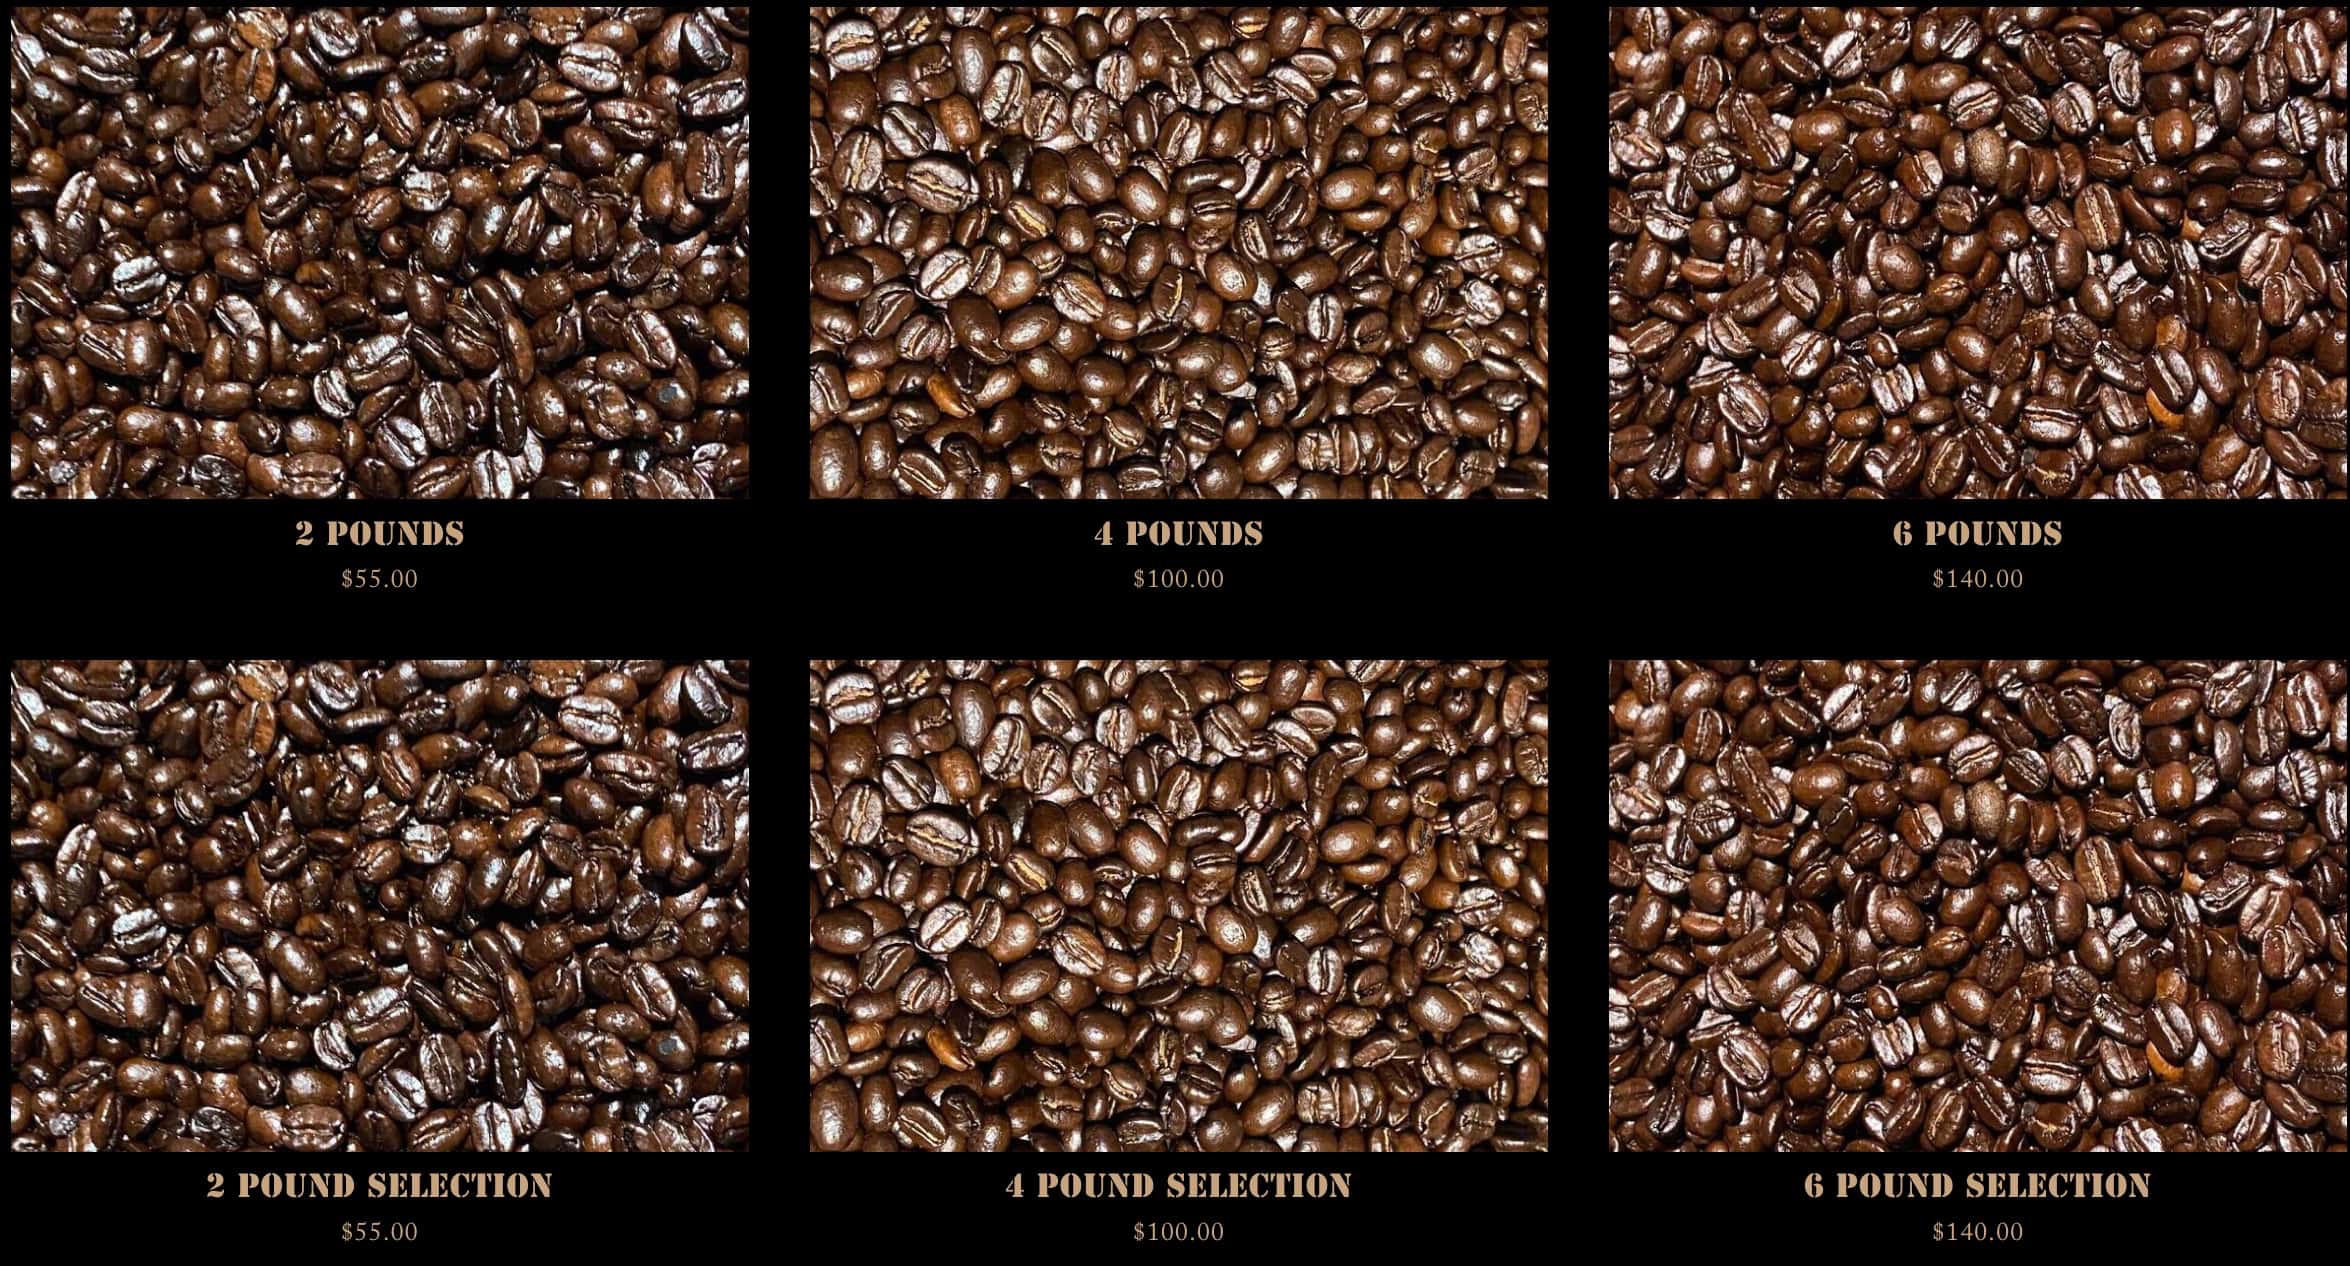 The Grind Coffee Menu